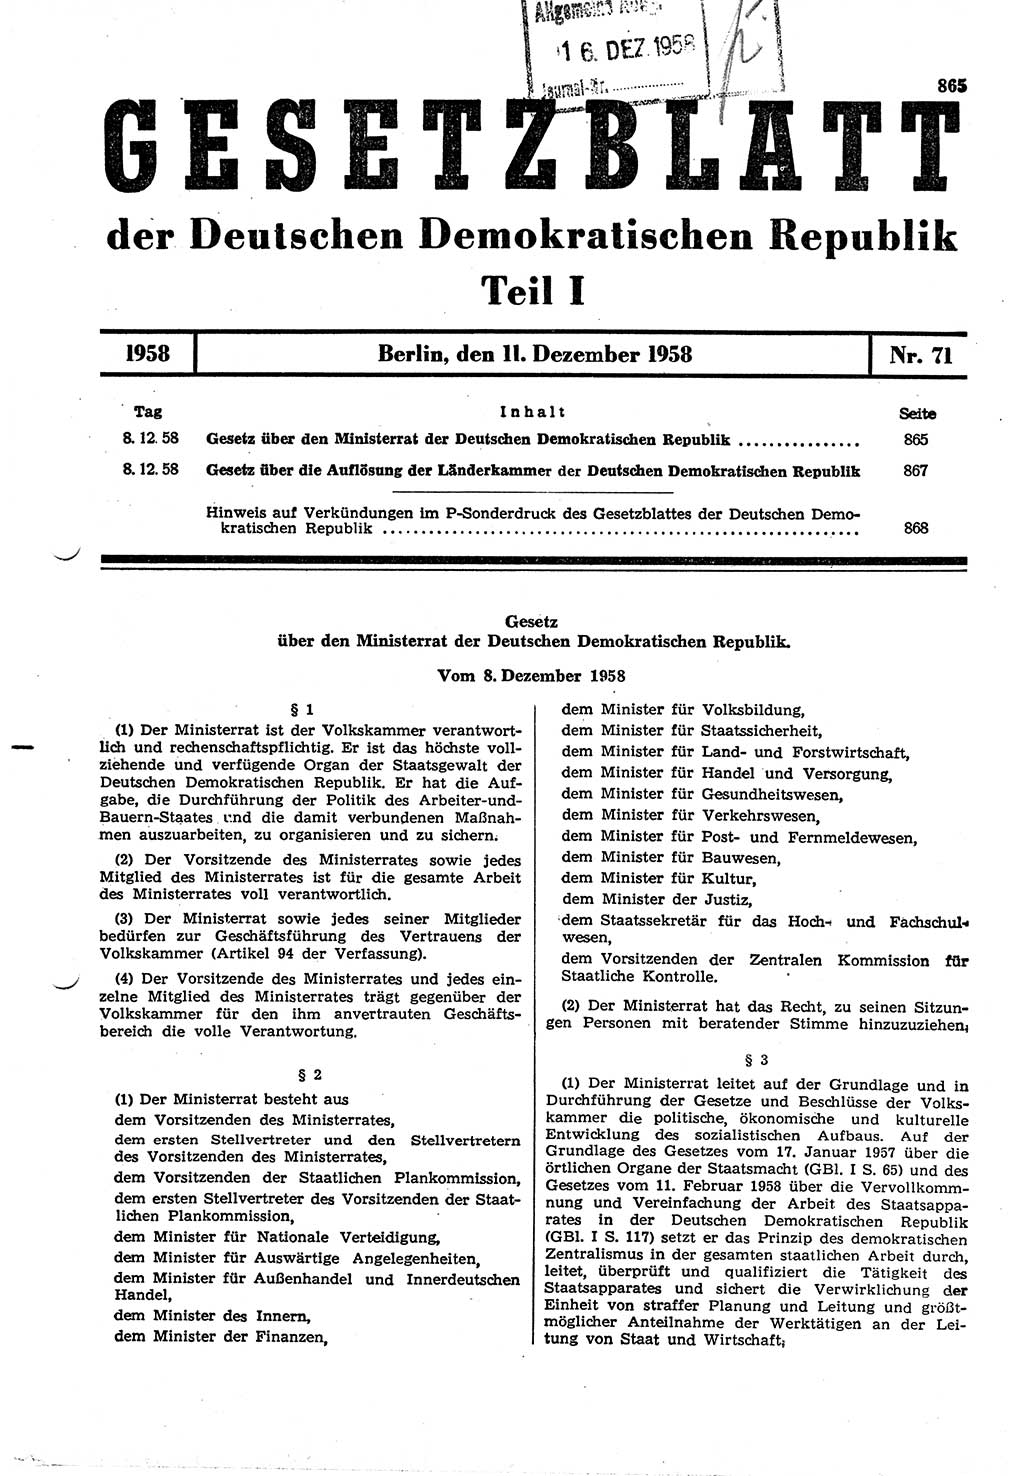 Gesetzblatt (GBl.) der Deutschen Demokratischen Republik (DDR) Teil Ⅰ 1958, Seite 865 (GBl. DDR Ⅰ 1958, S. 865)